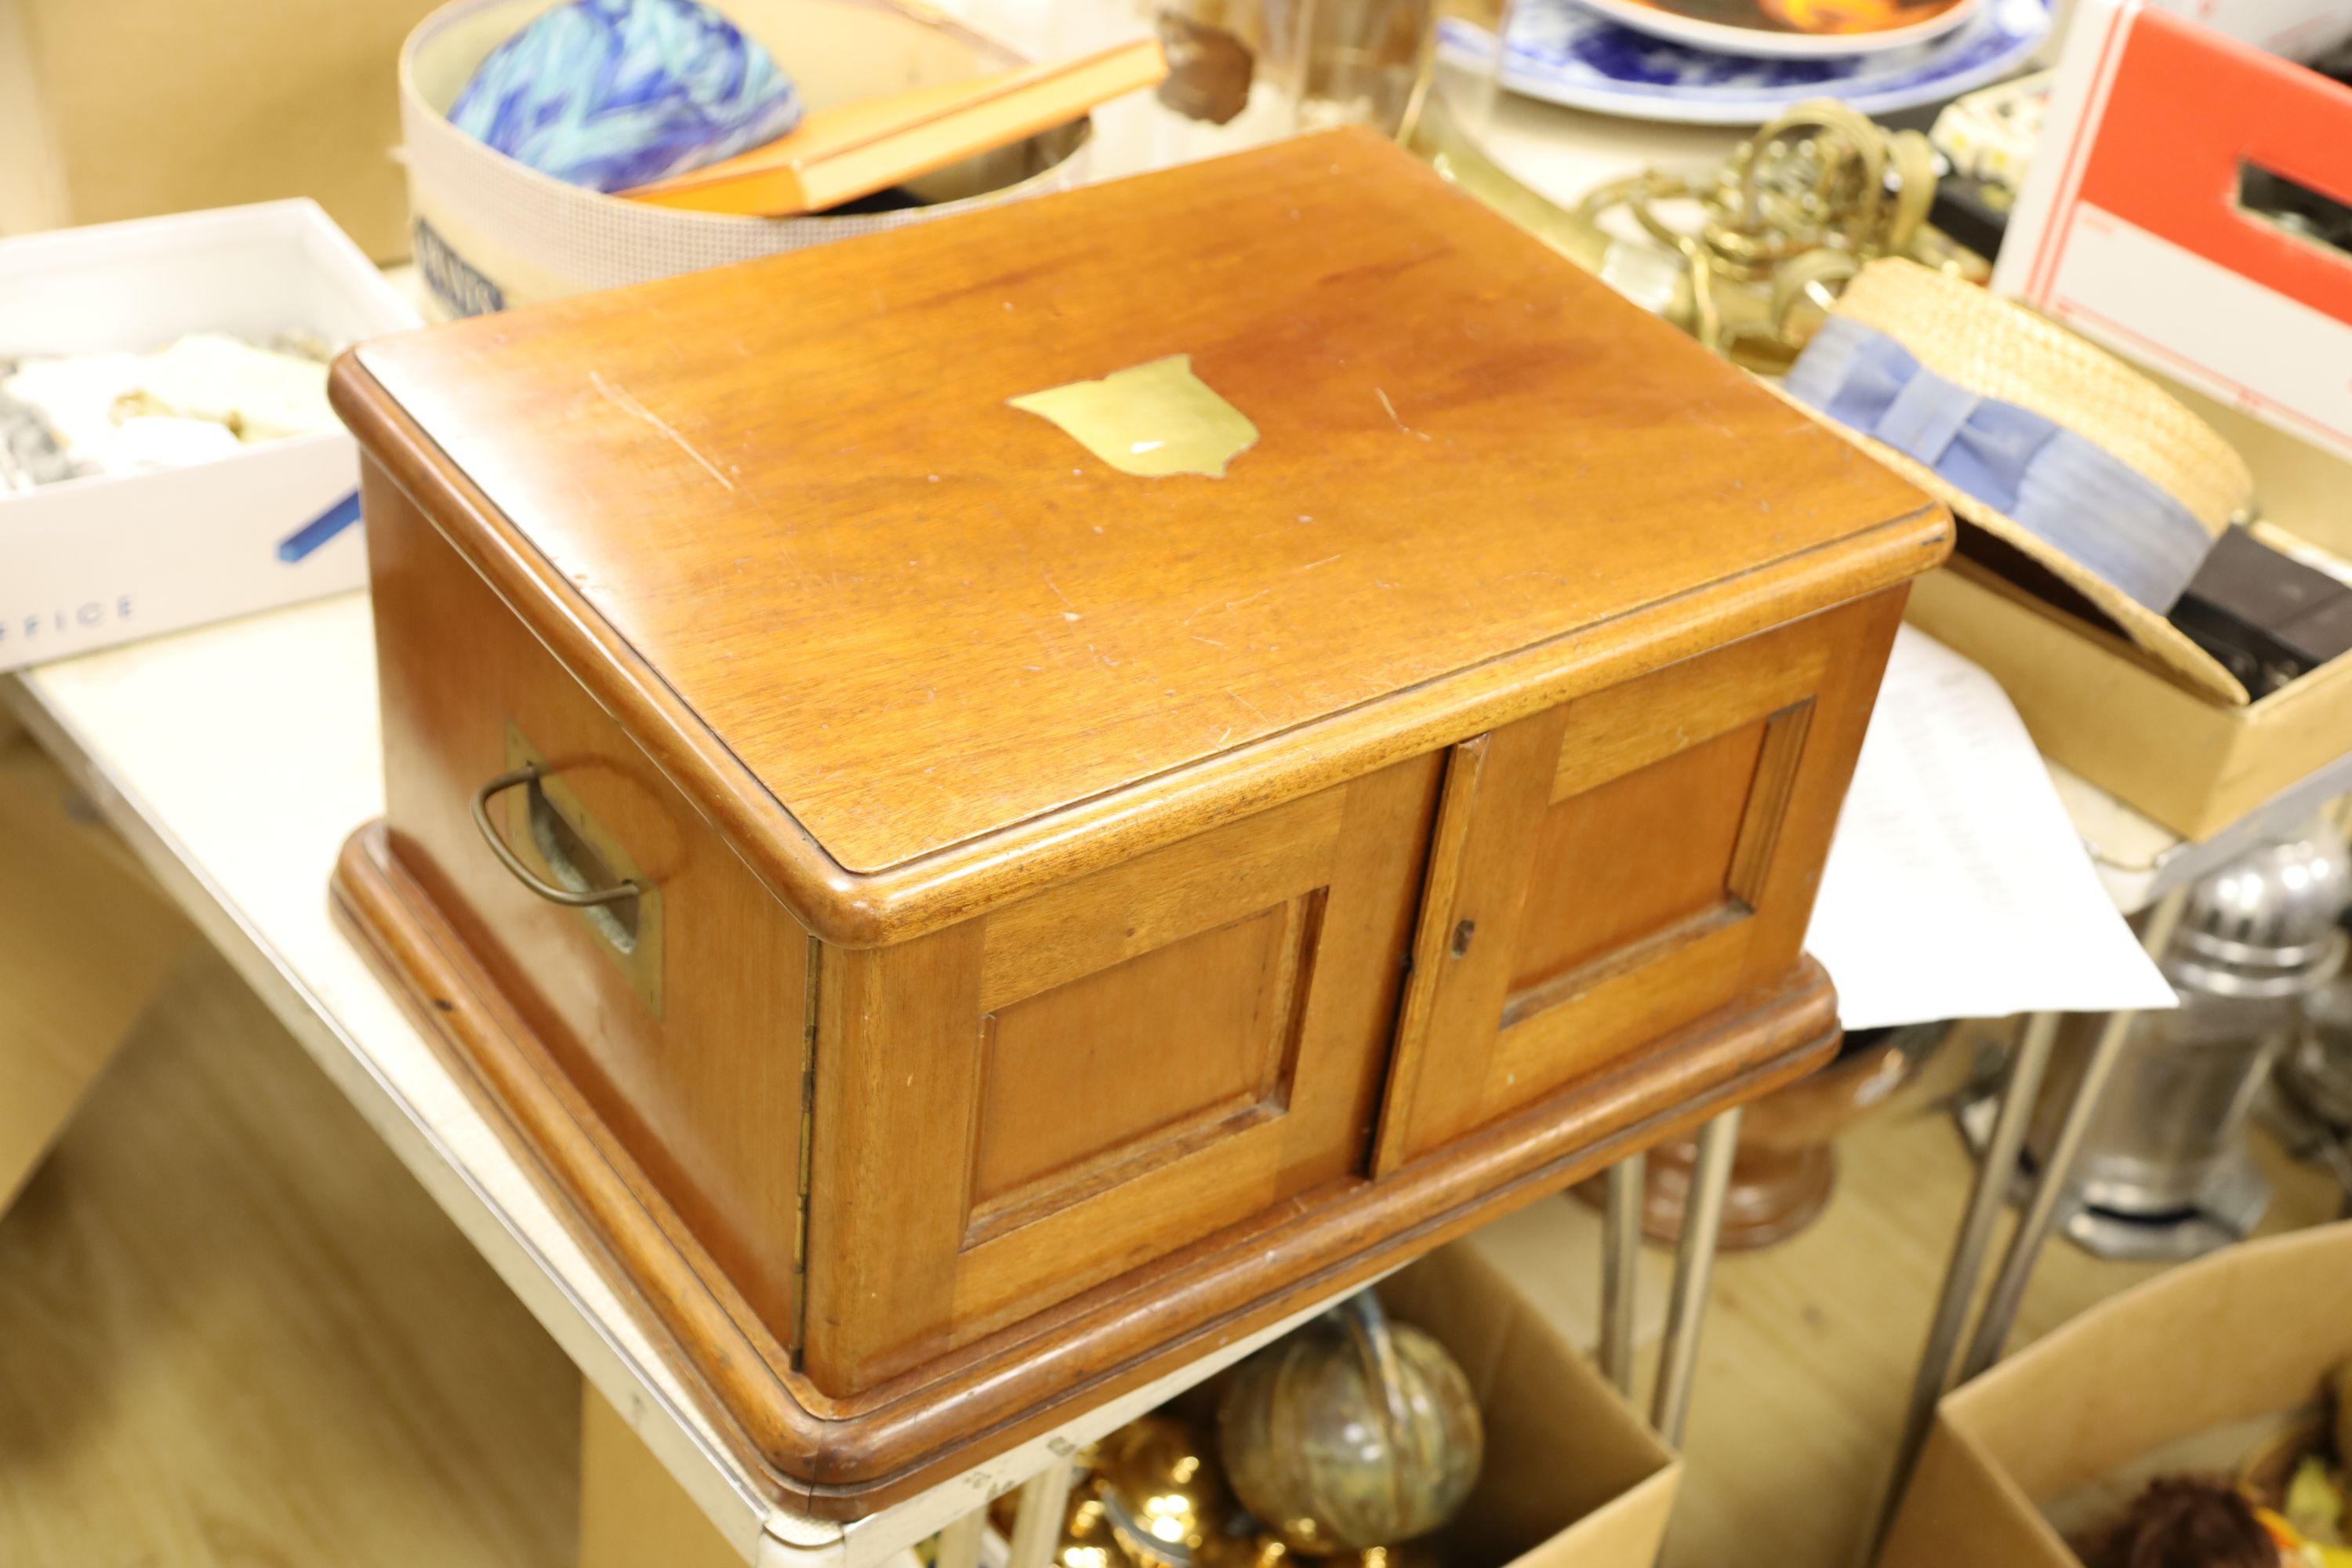 A Victorian mahogany cutlery box (no contents)